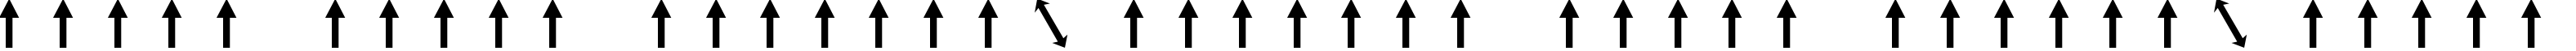 Пример написания шрифтом Arrows1 текста на белорусском